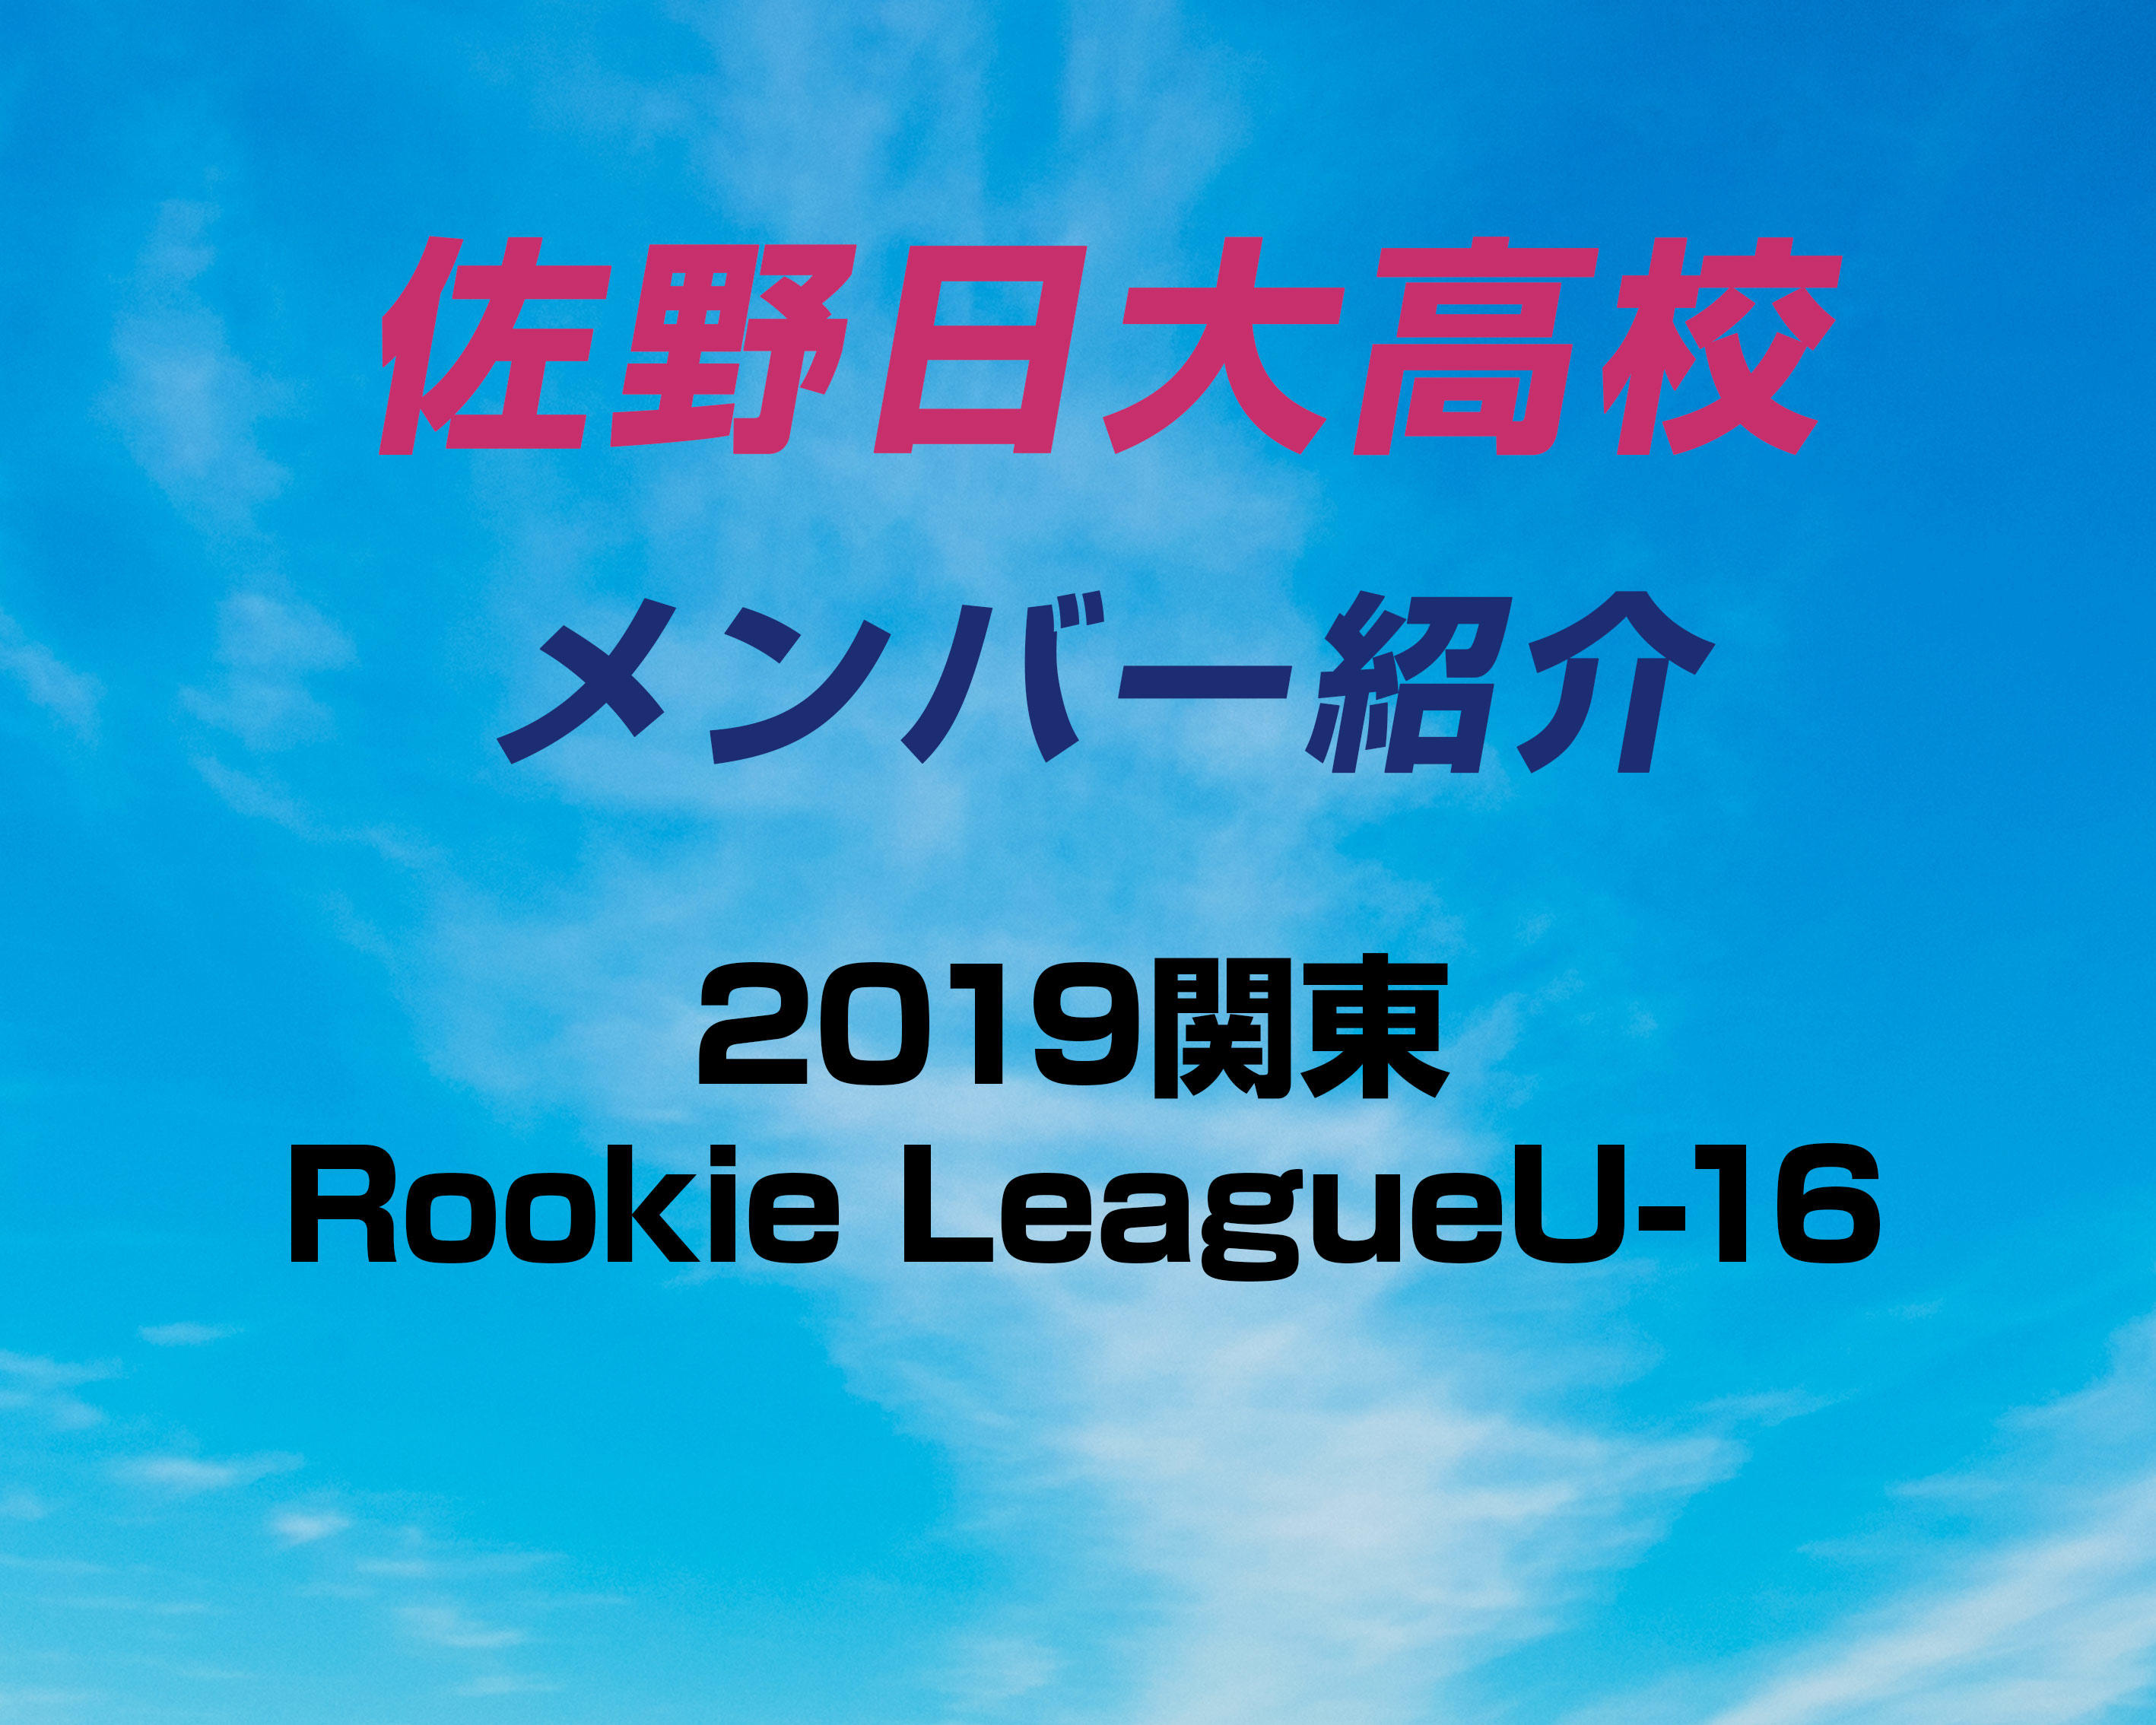 群馬の名門 前橋育英高校サッカー部のメンバー紹介 19関東rookie Leagueu 16 ヤンサカ